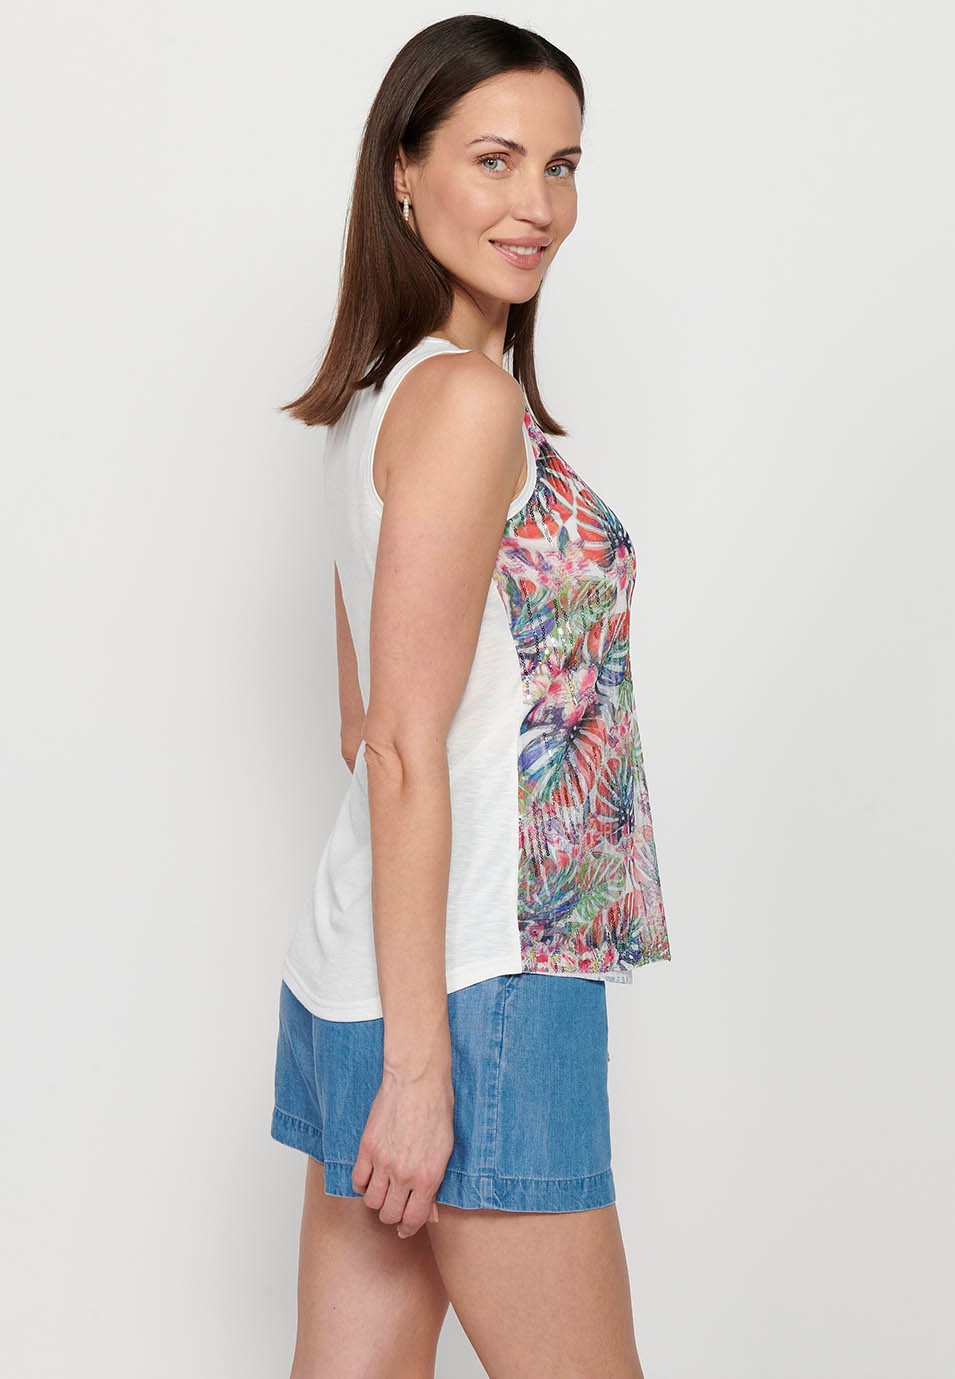 Camiseta de tirantes, escote redondo, estampado floral y lentejuelas, multicolor para mujer